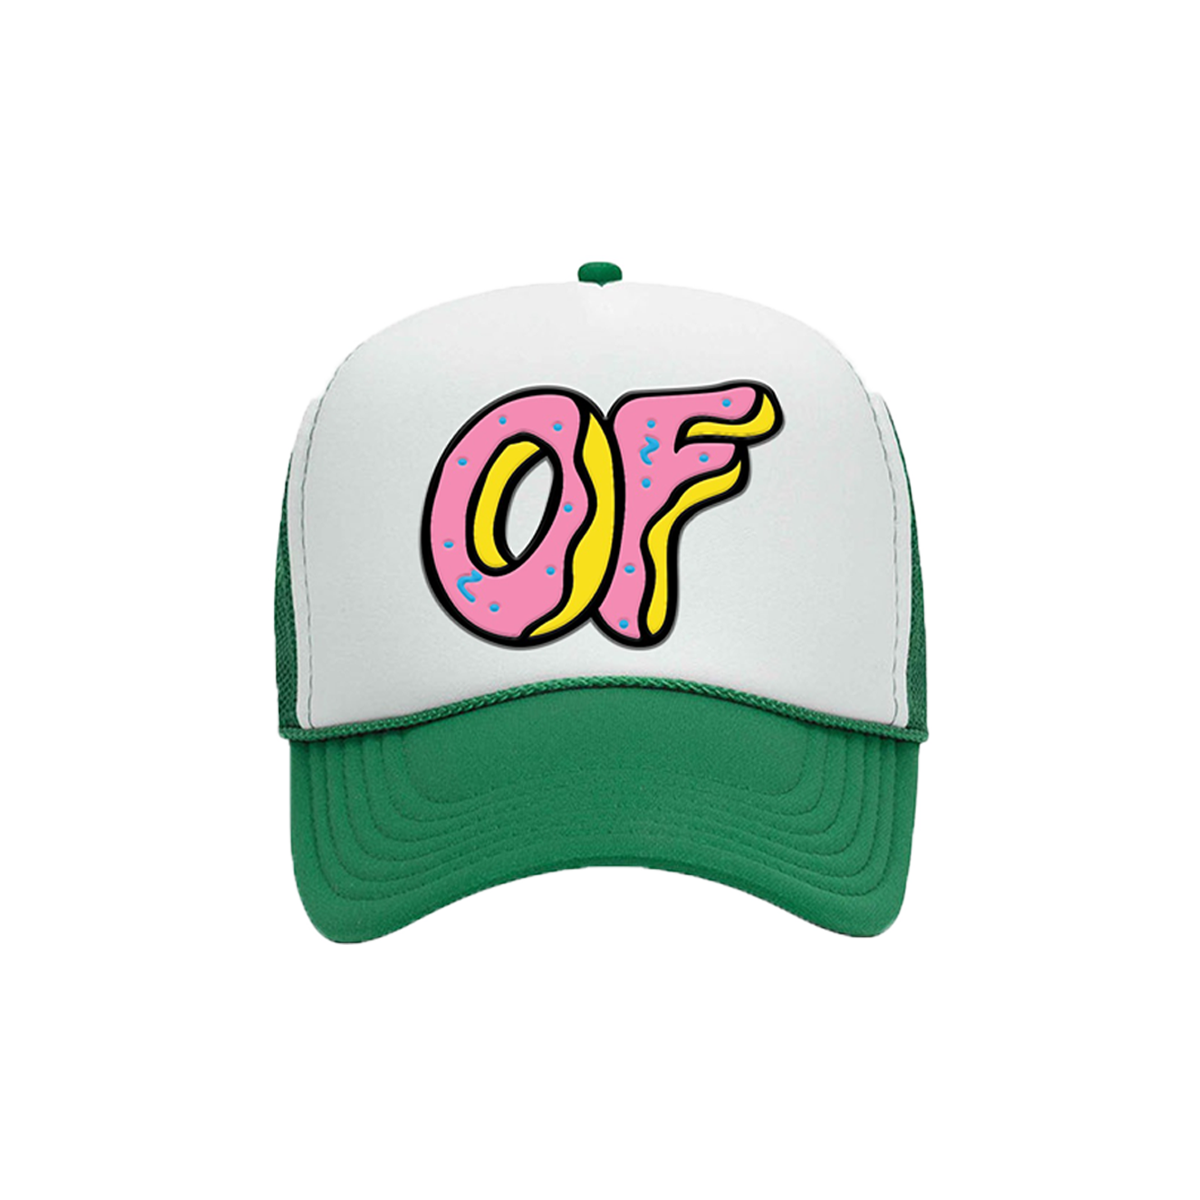 OF Trucker Hat Green Odd Future